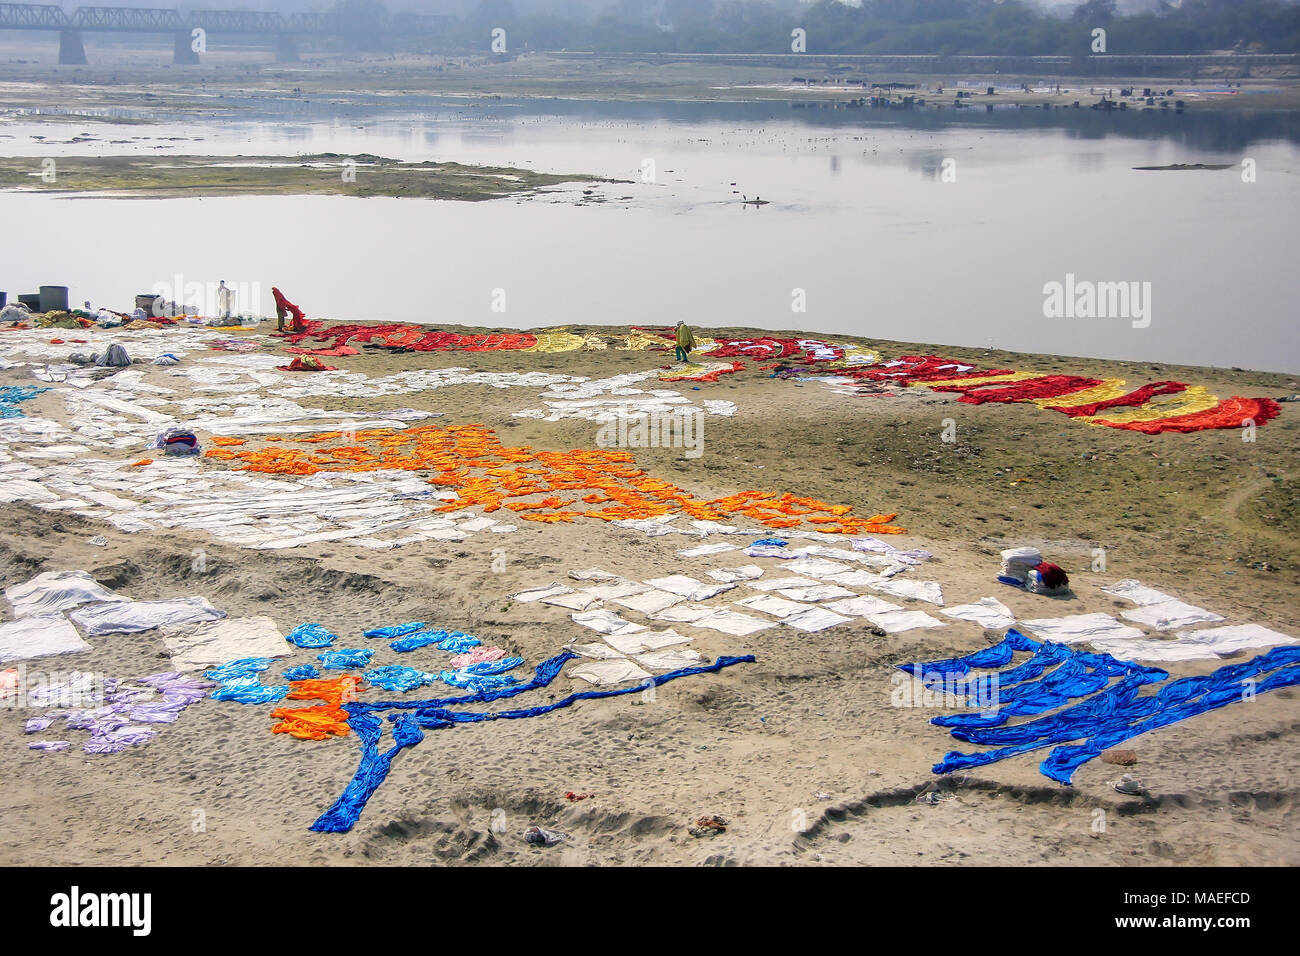 Wäsche trocknen auf dem Ufer des Yamuna River in Agra, Uttar Pradesh, Indien. Agra ist eine der bevölkerungsreichsten Städte in Uttar Pradesh. Stockfoto